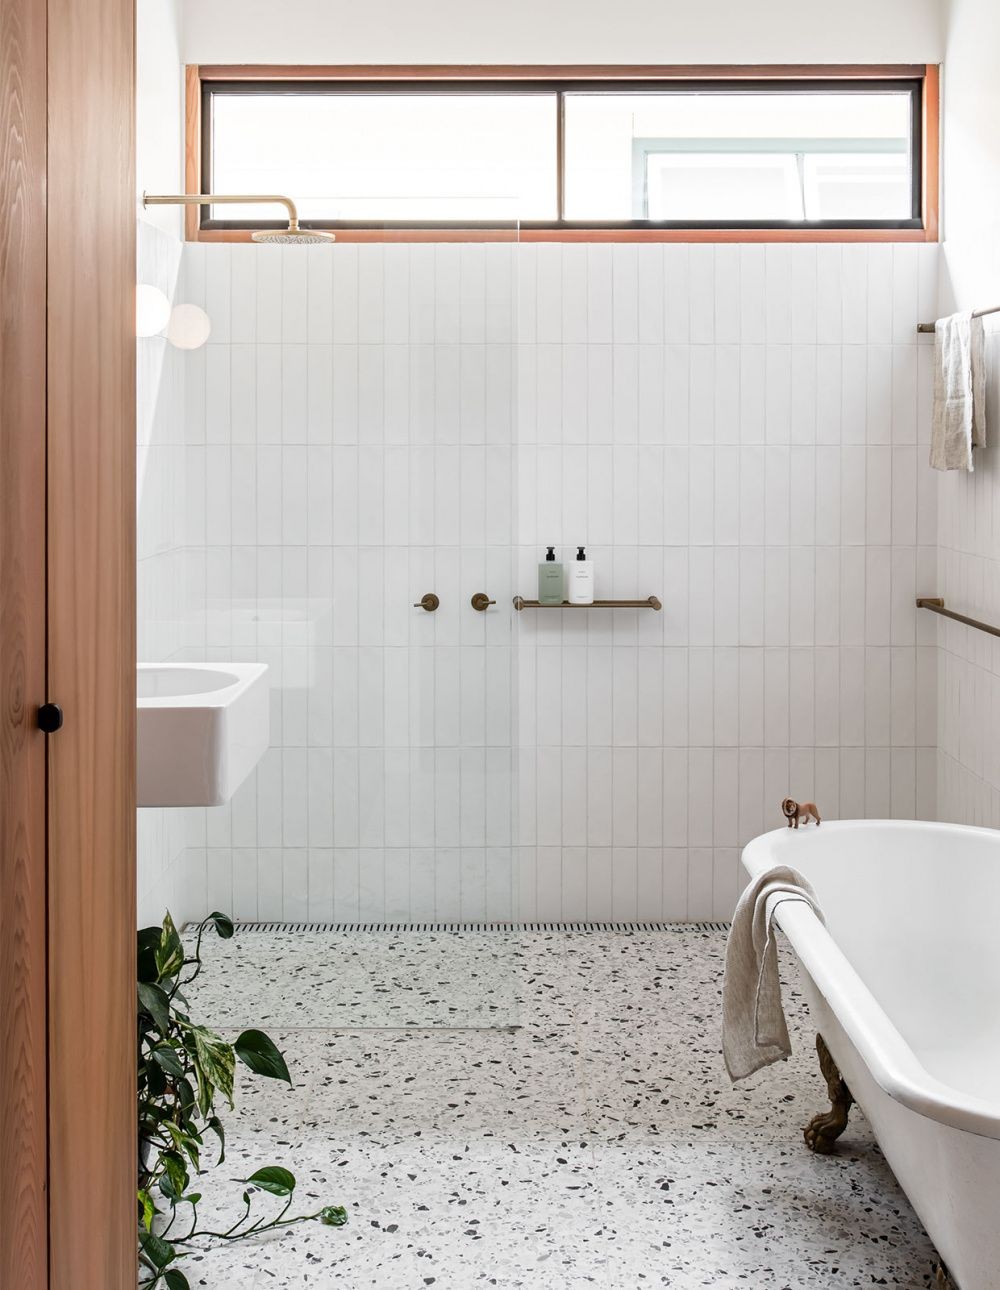 Décor do dia: banheiro com piso de granilite e decoração minimalista - Casa  Vogue | Décor do dia